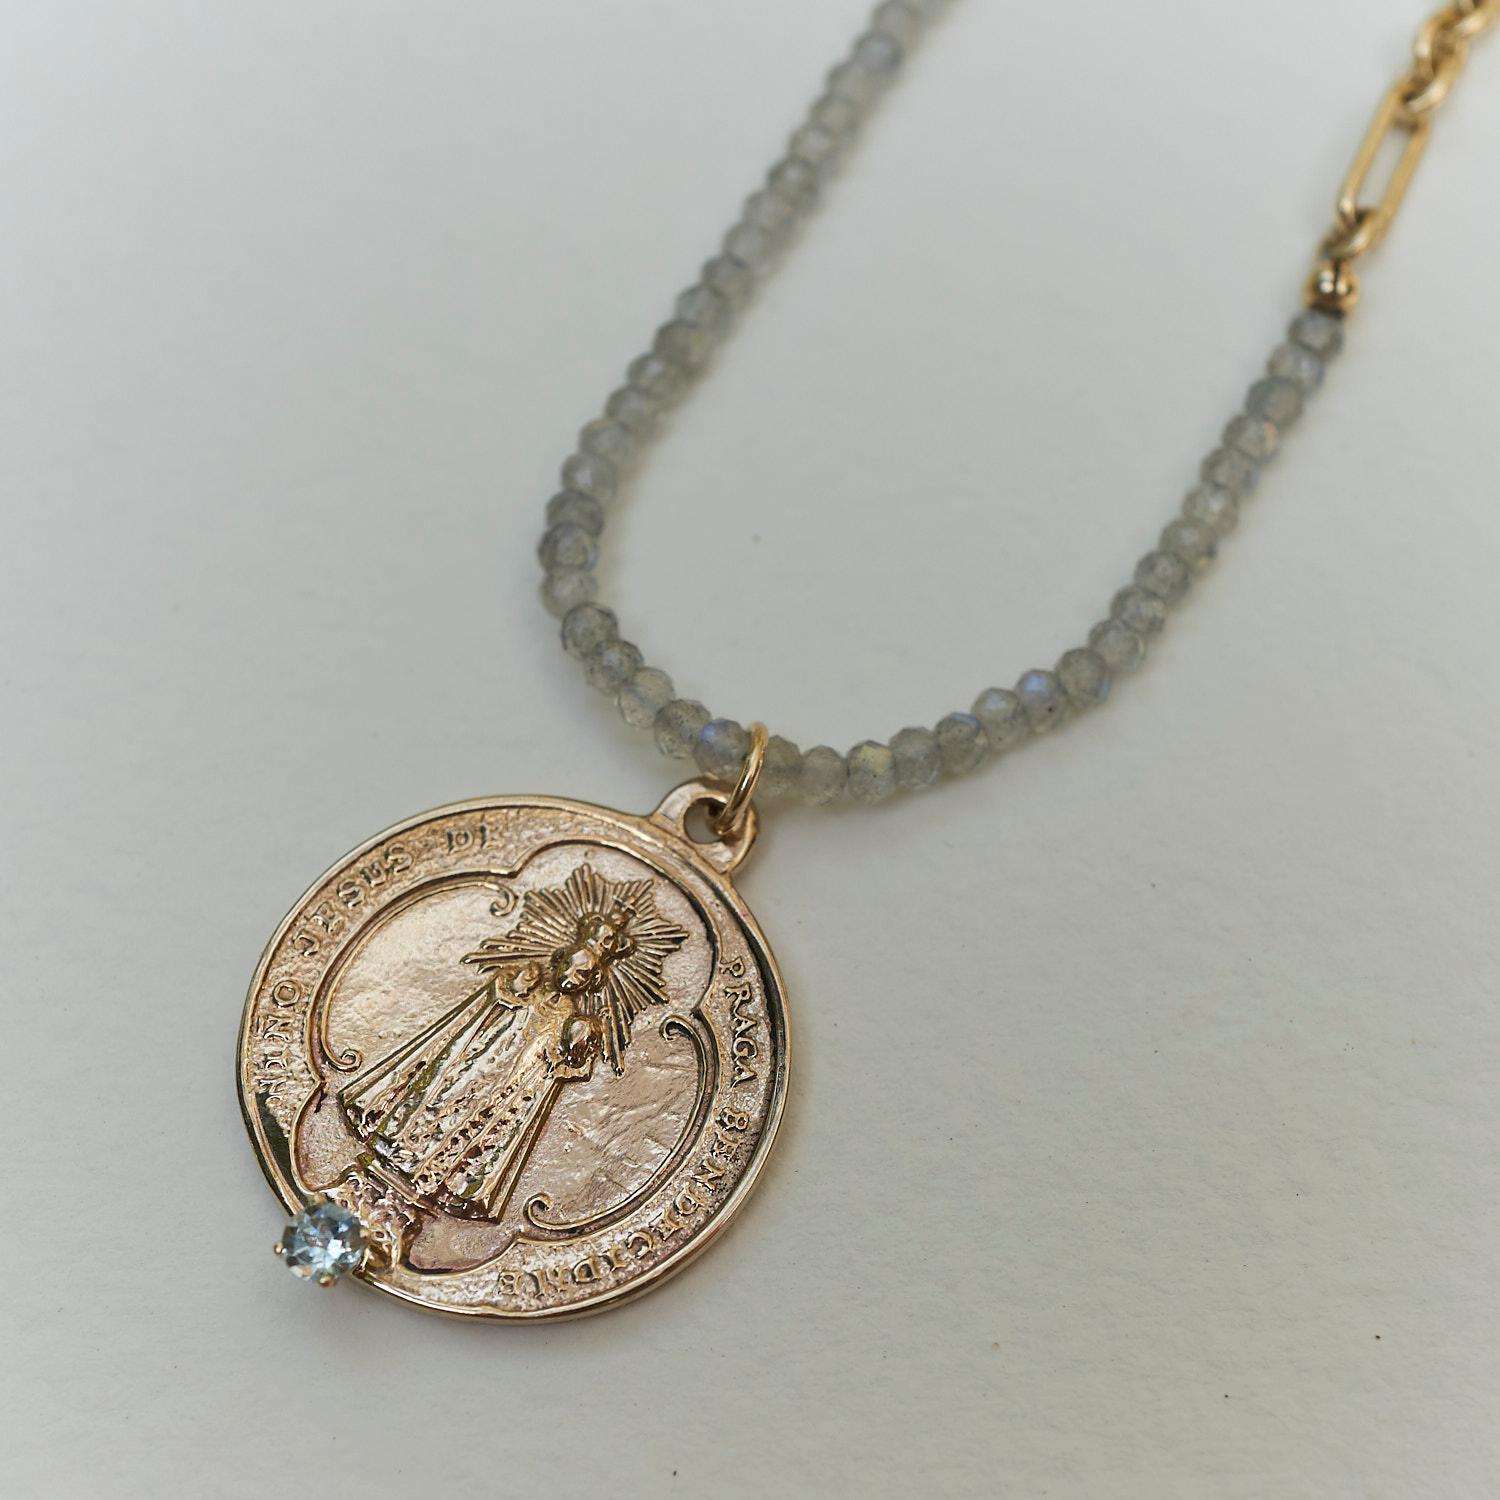 Aquamarin Medaille Kette Perlenkette Jungfrau Maria Labradorit J Dauphin

J Dauphin-Schmuck wird in Los Angeles handgefertigt und wurde von der französisch-schwedischen Designerin Johanna Dauphin entworfen. 
J Dauphin wurde mehrfach als